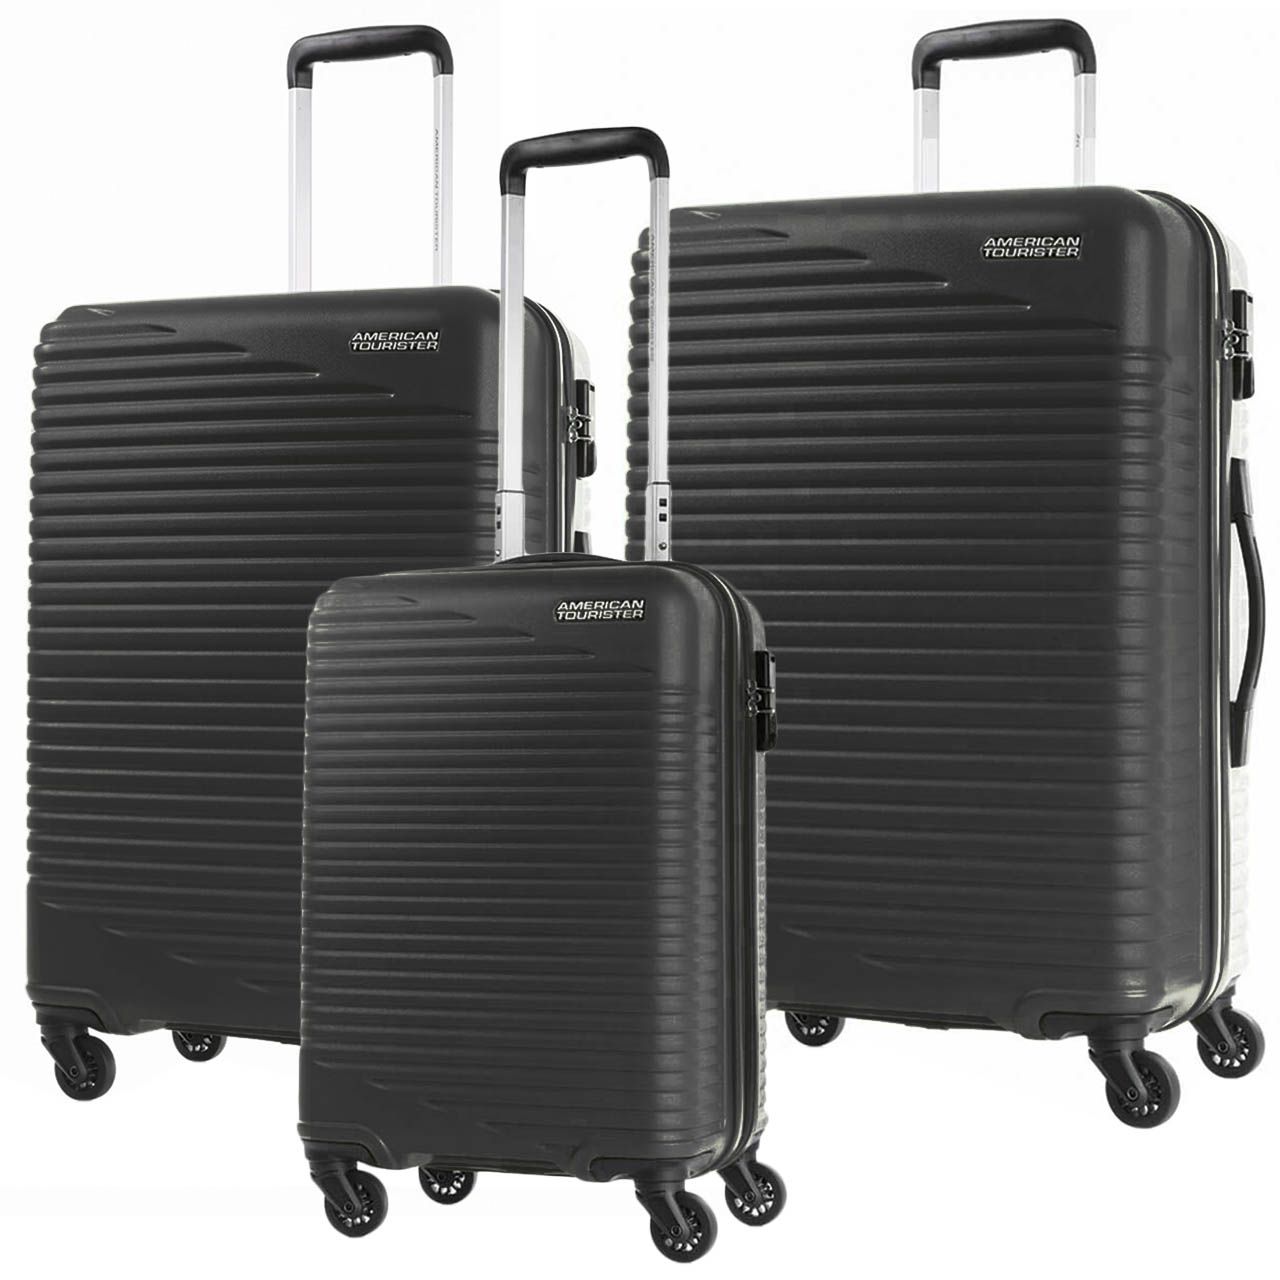 مجموعه سه عددی چمدان امریکن توریستر مدل SKYPARK HCO  -  - 3